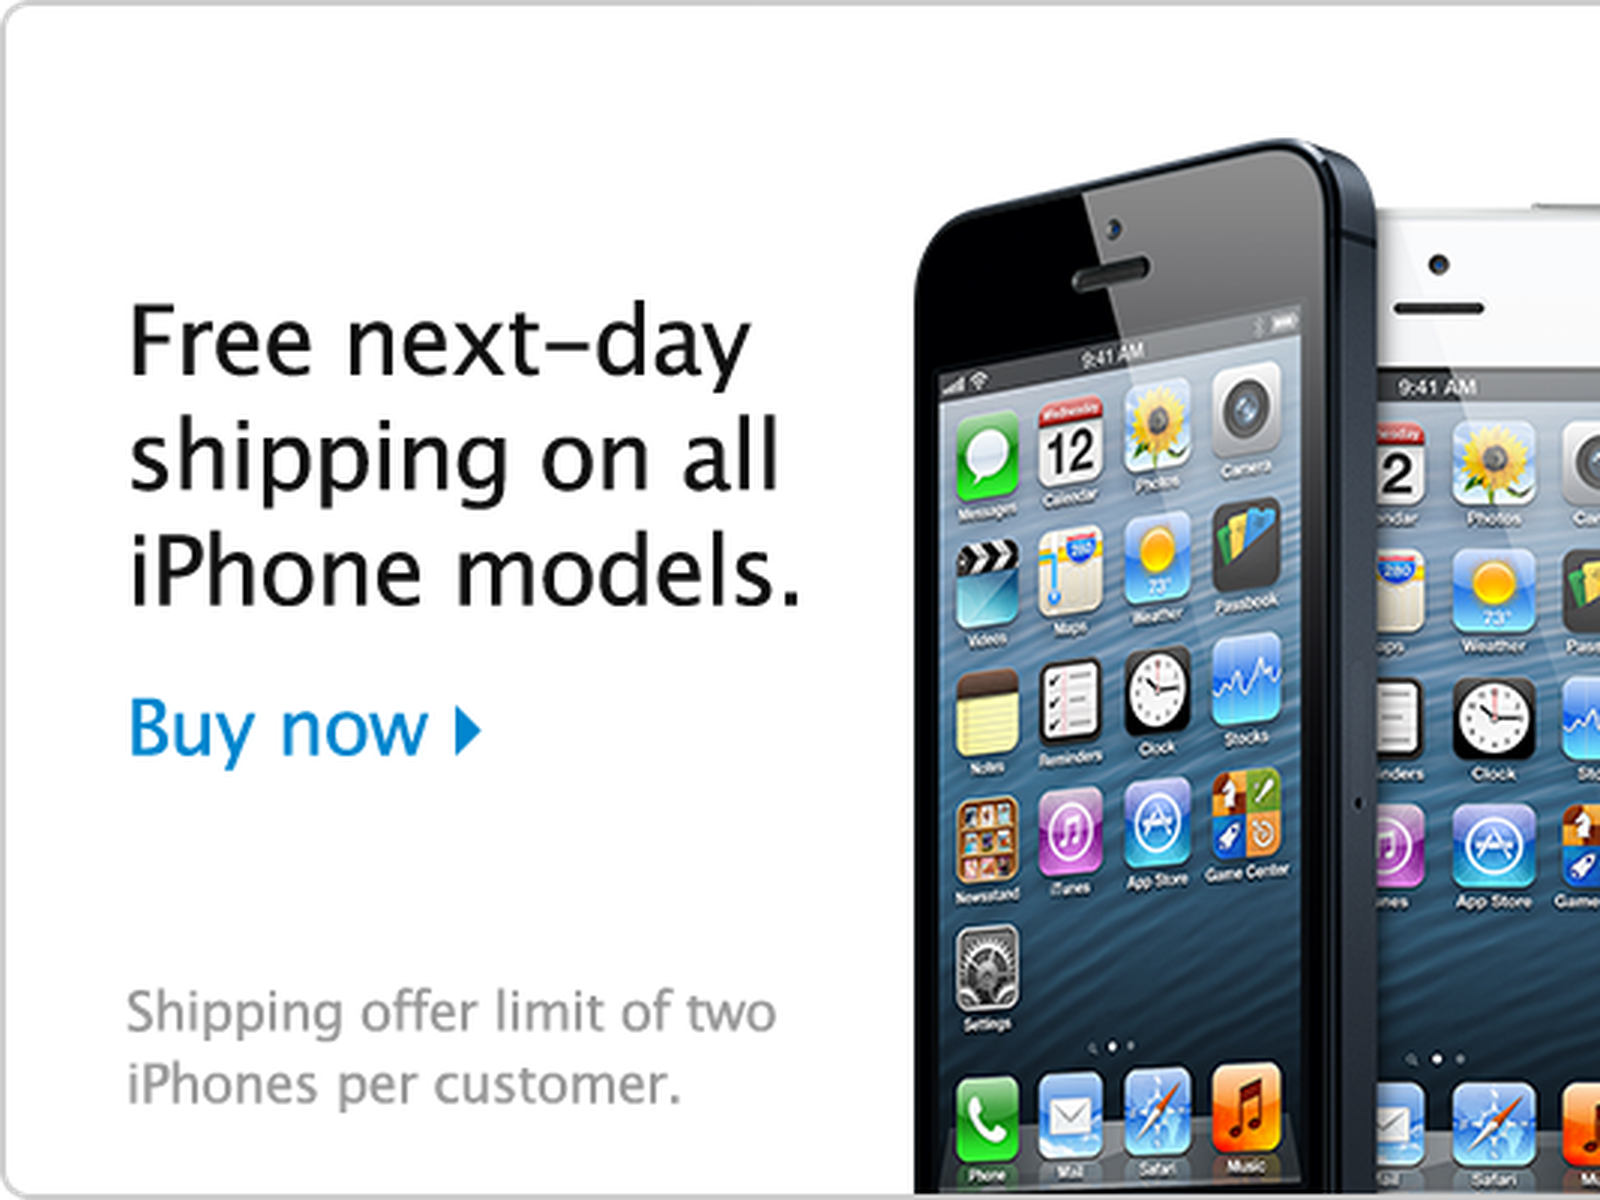 Iphone all models. Маркетинг айфона. Apple iphone Promo. Модель айфона с Америки. Как называется маркет на айфонах